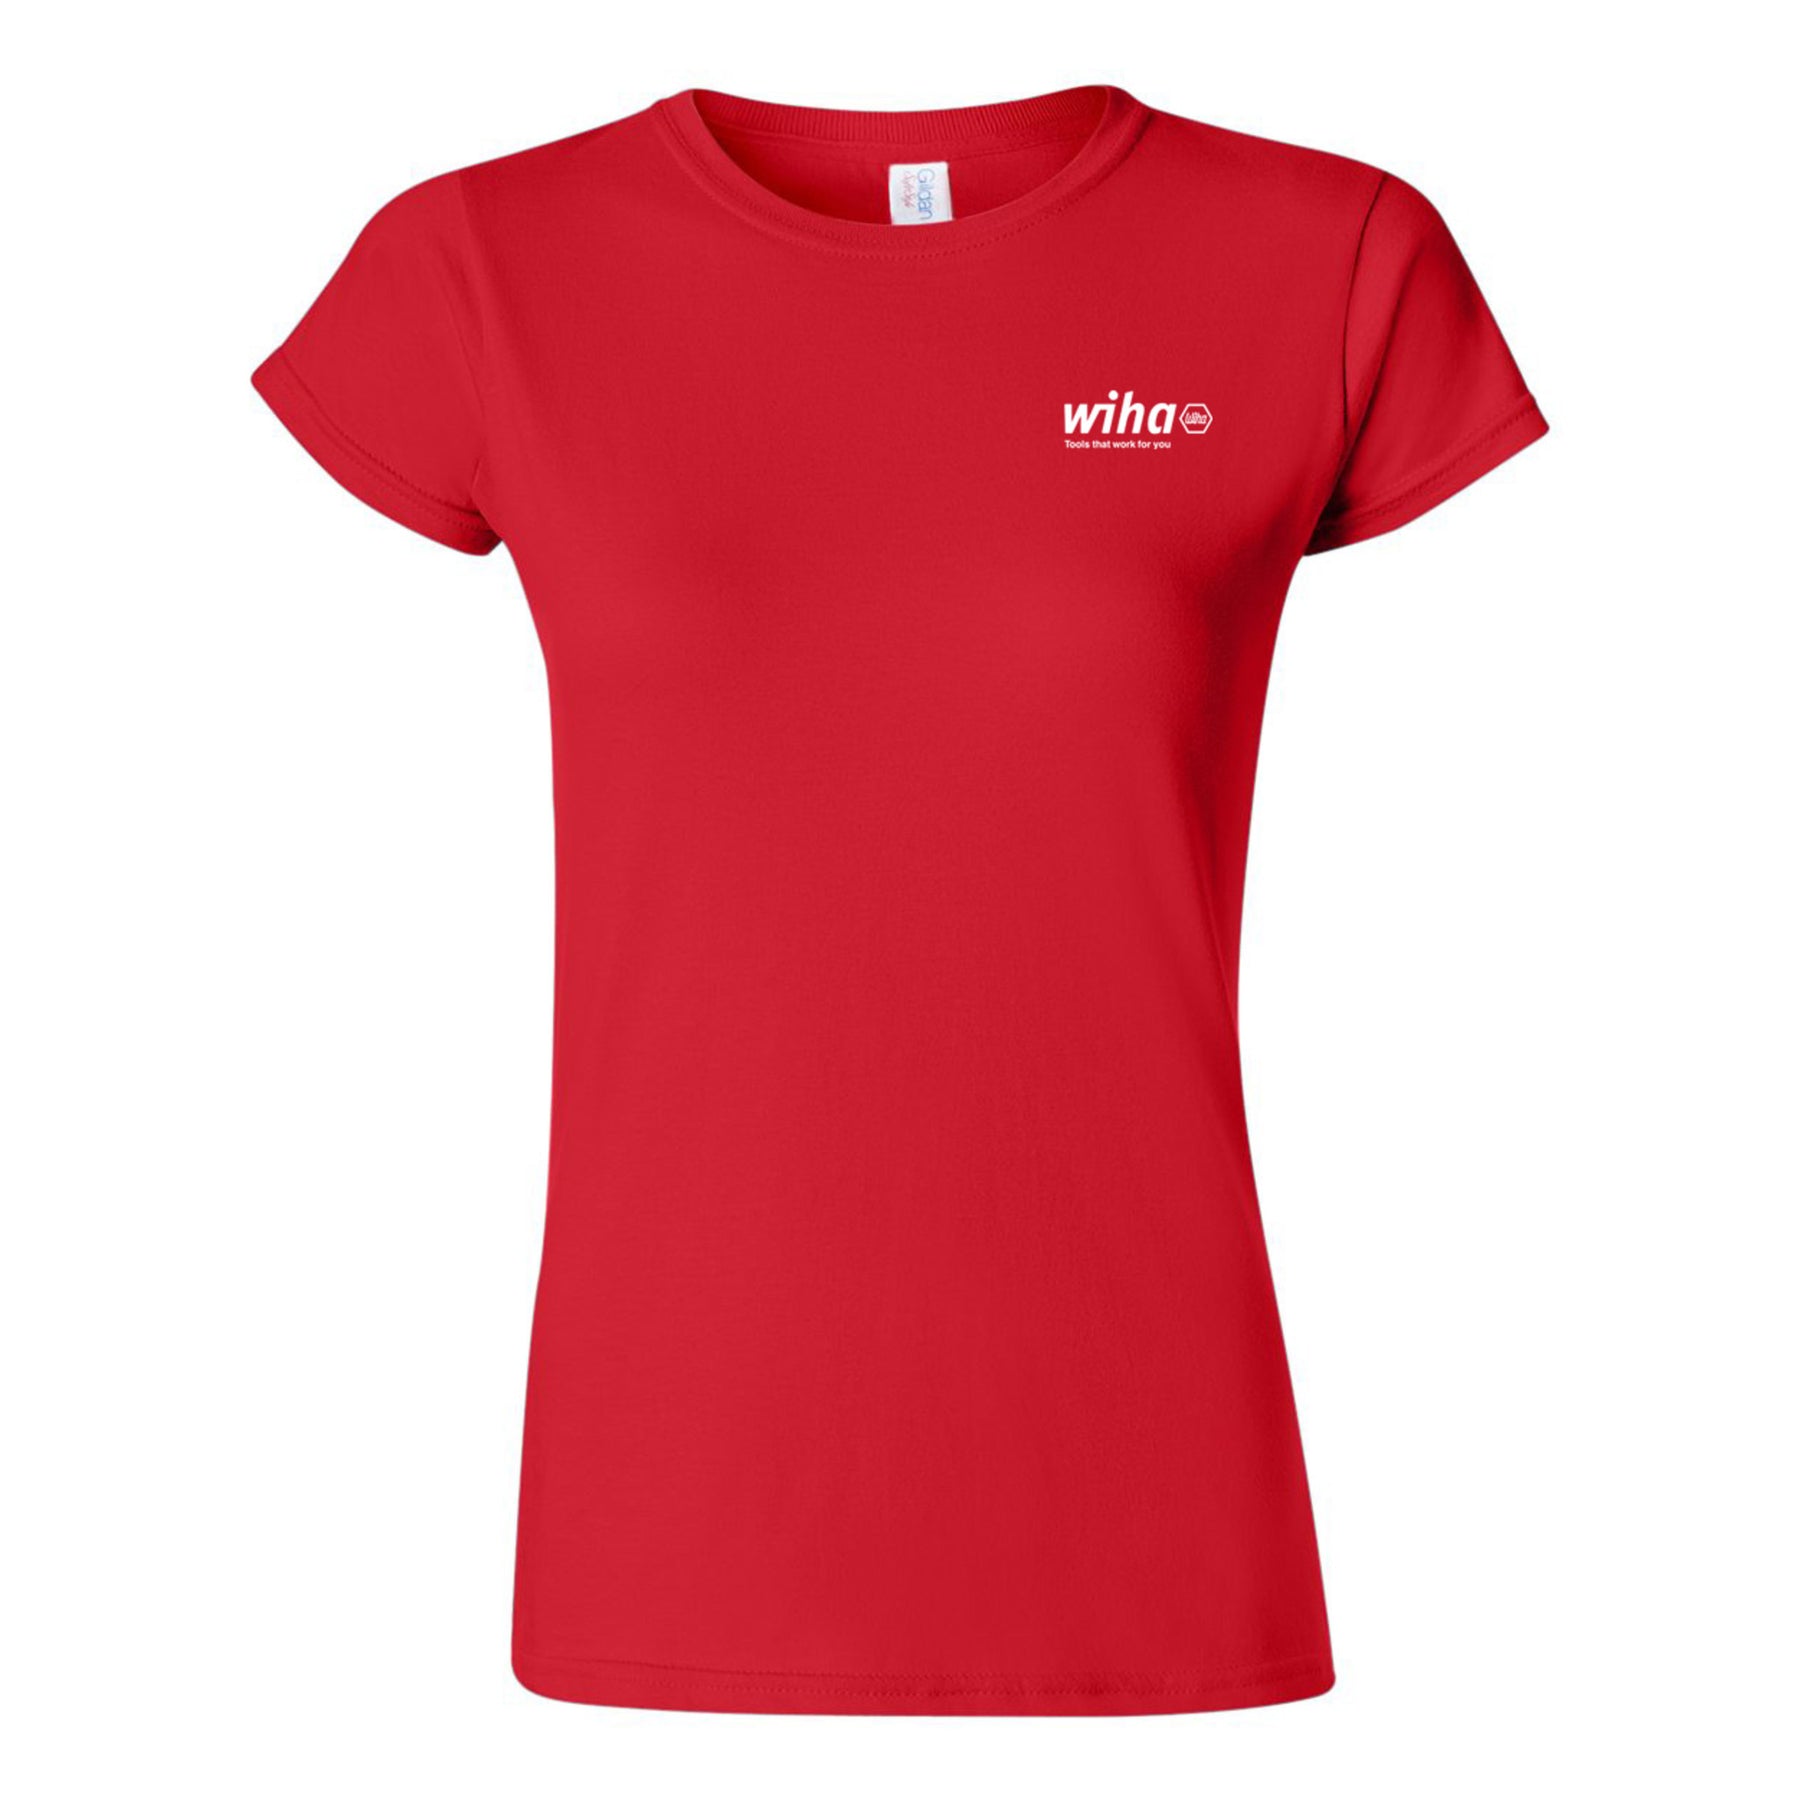 Wiha 91621 Wiha Women's T-shirt Red Medium